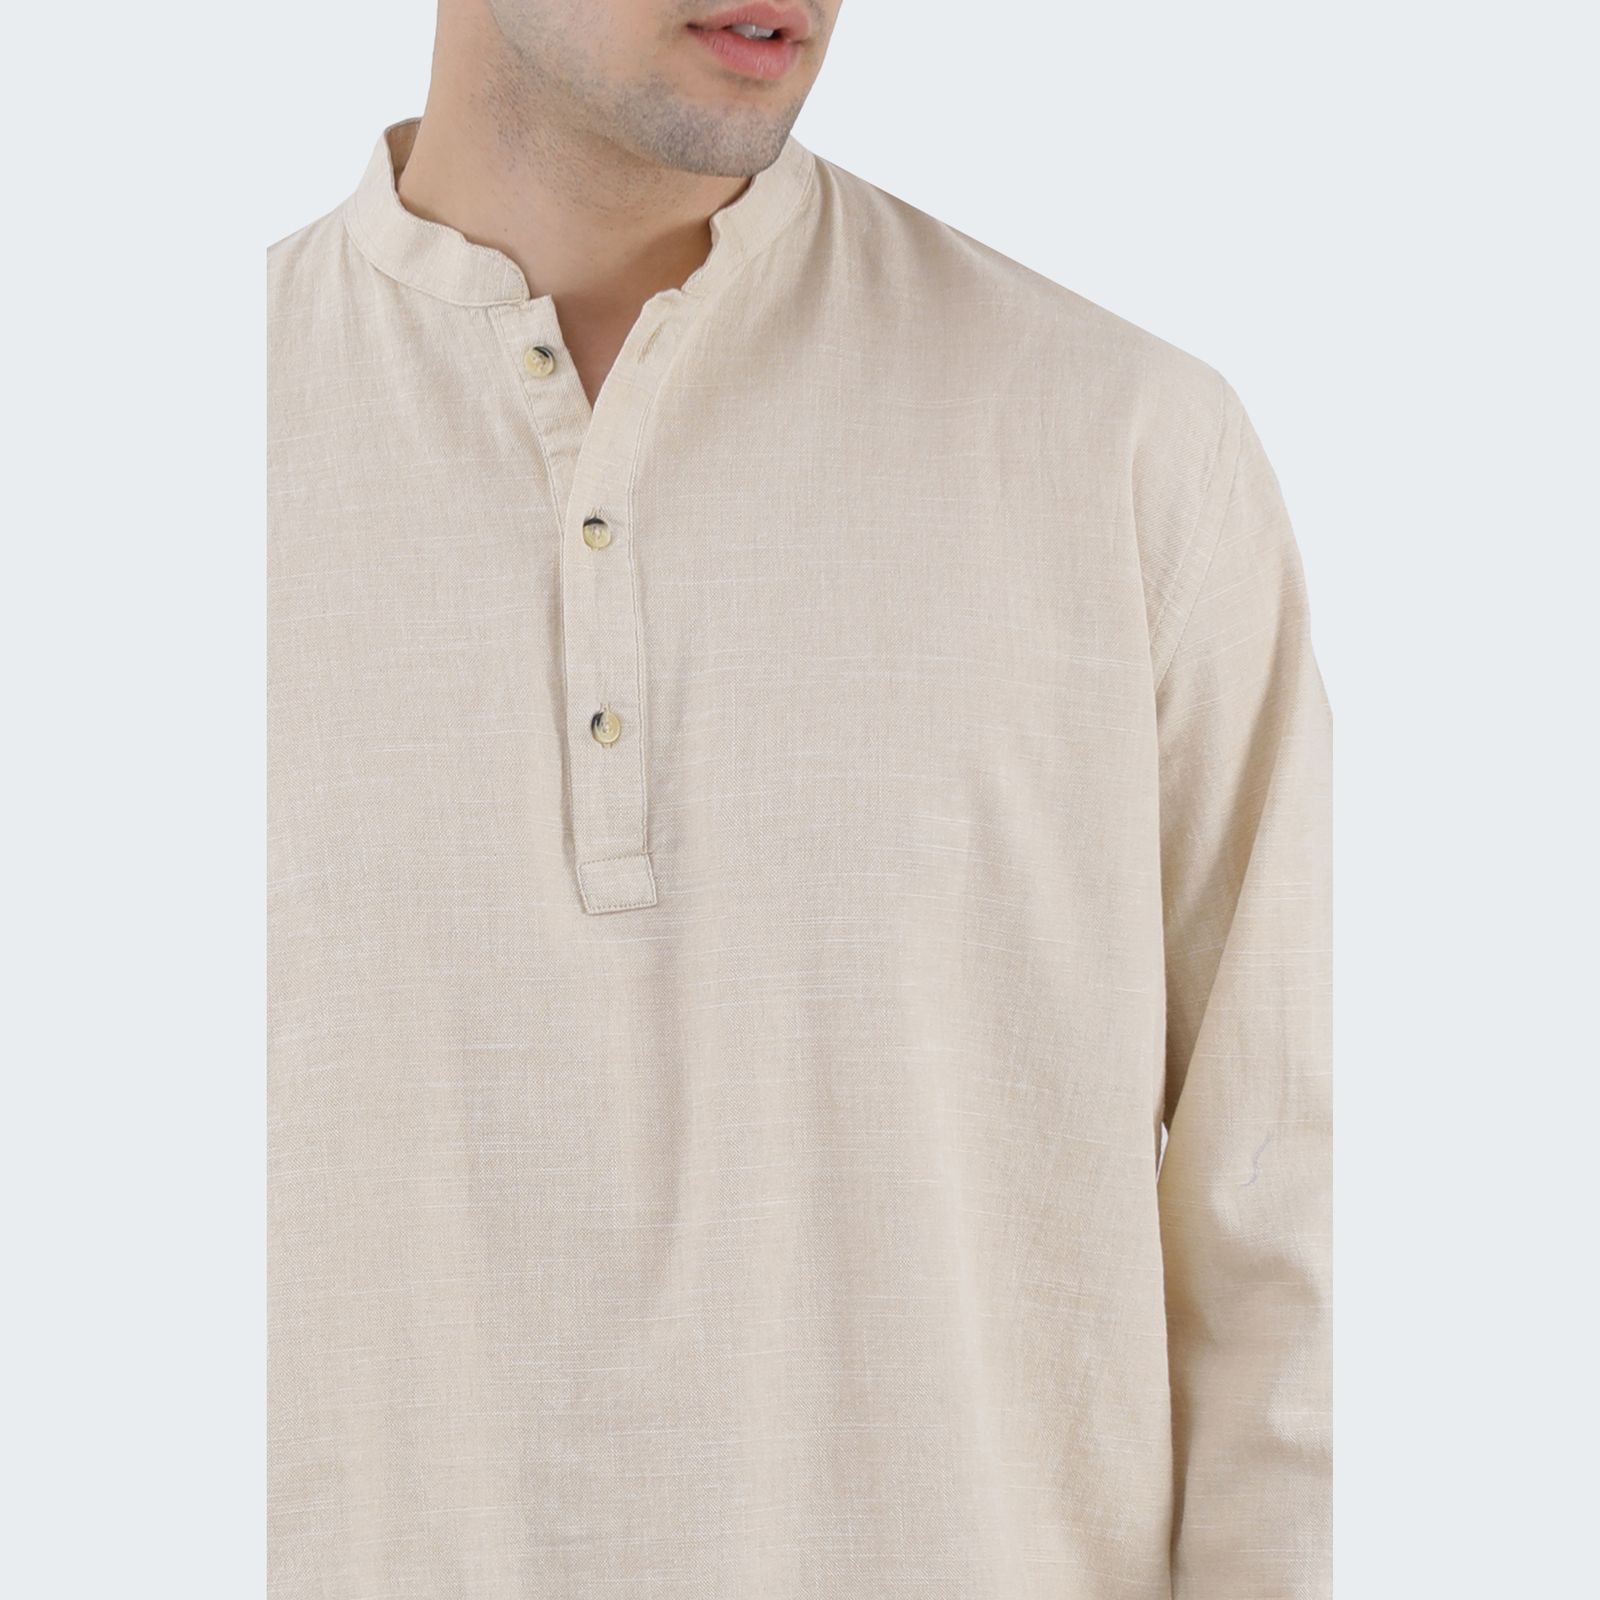 پیراهن آستین بلند مردانه پاتن جامه مدل یقه فرنچ 102721020033155 -  - 5